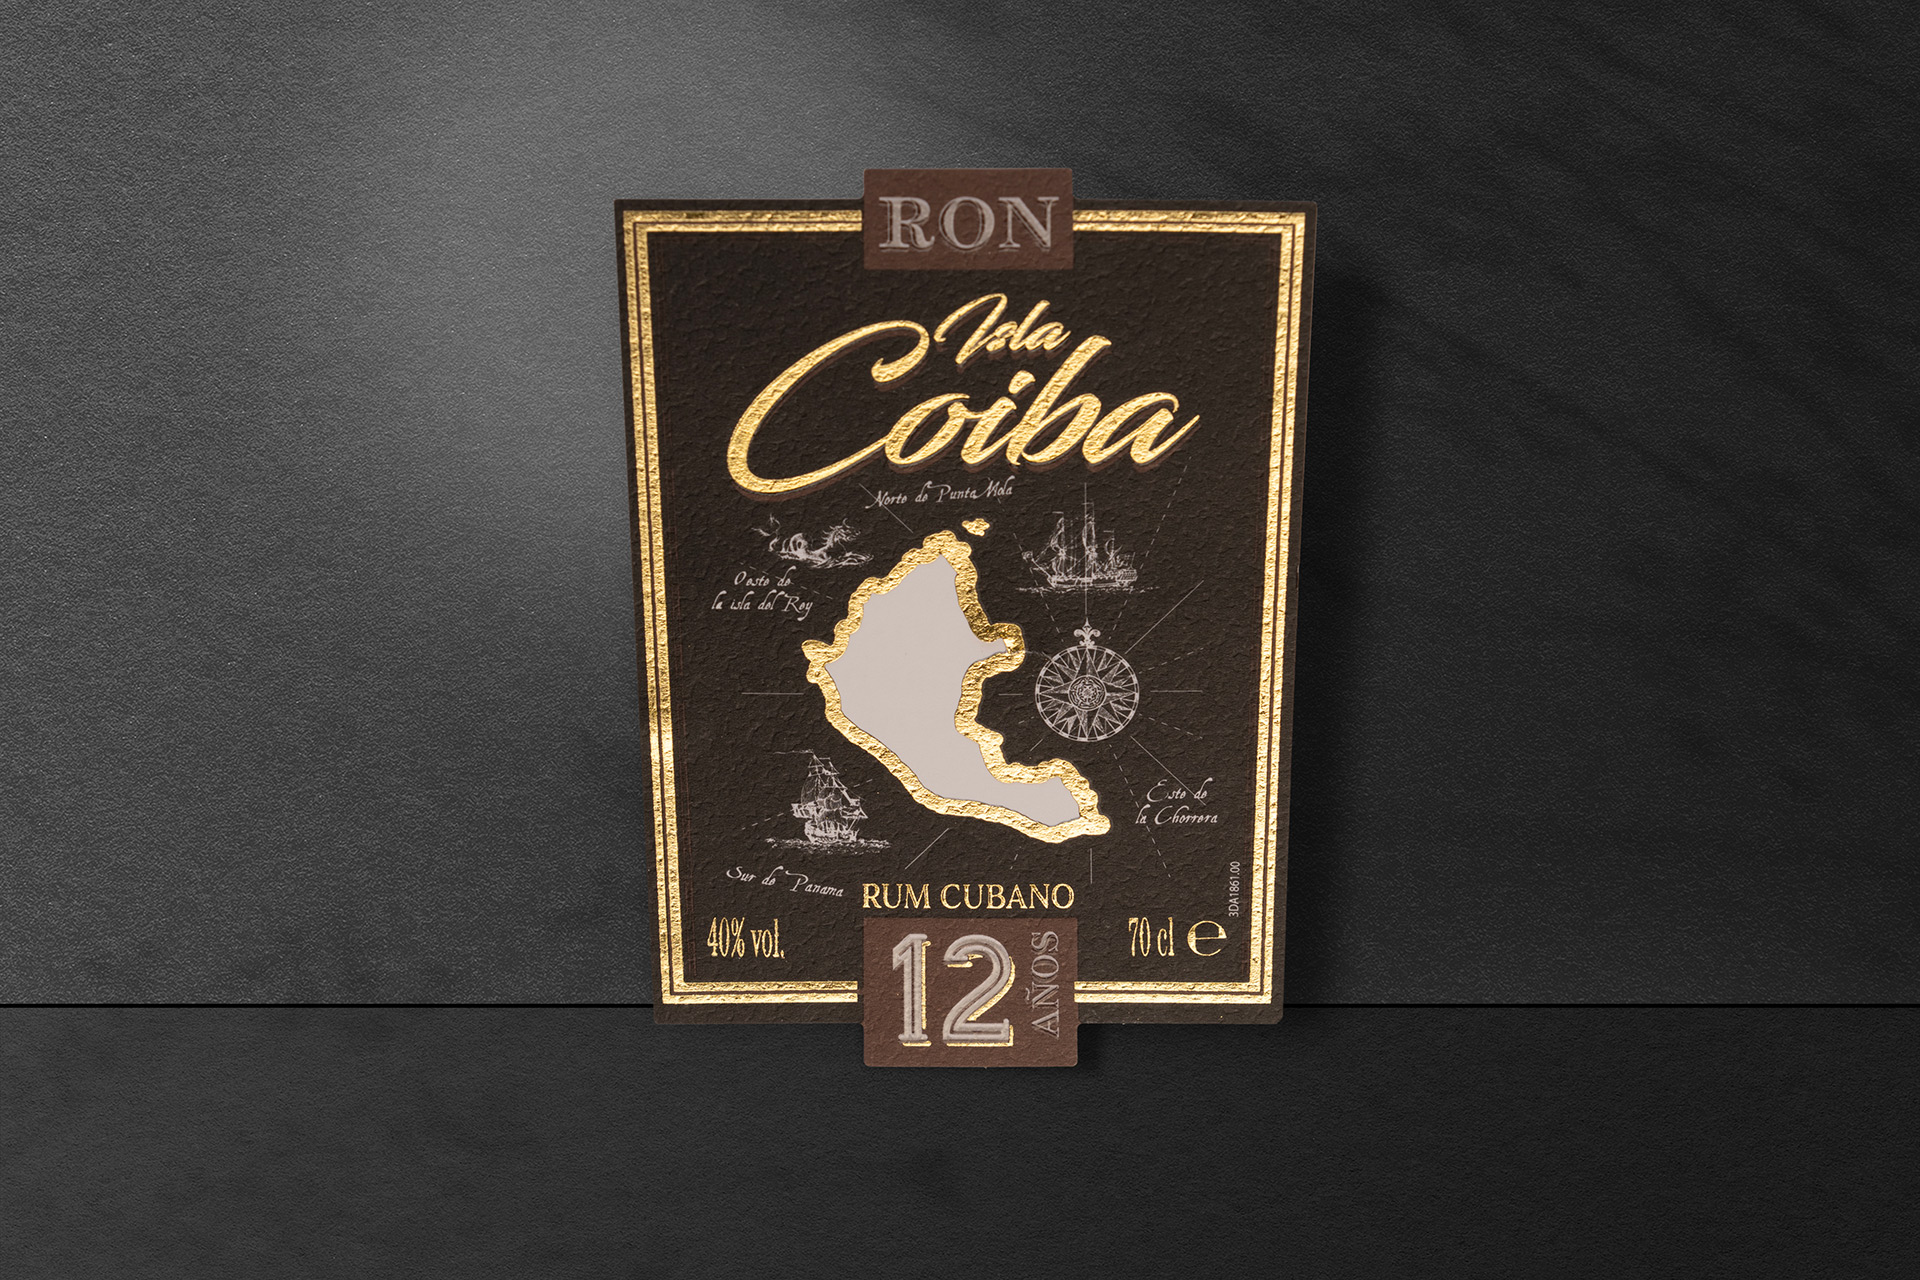 Cuban Coiba Rum